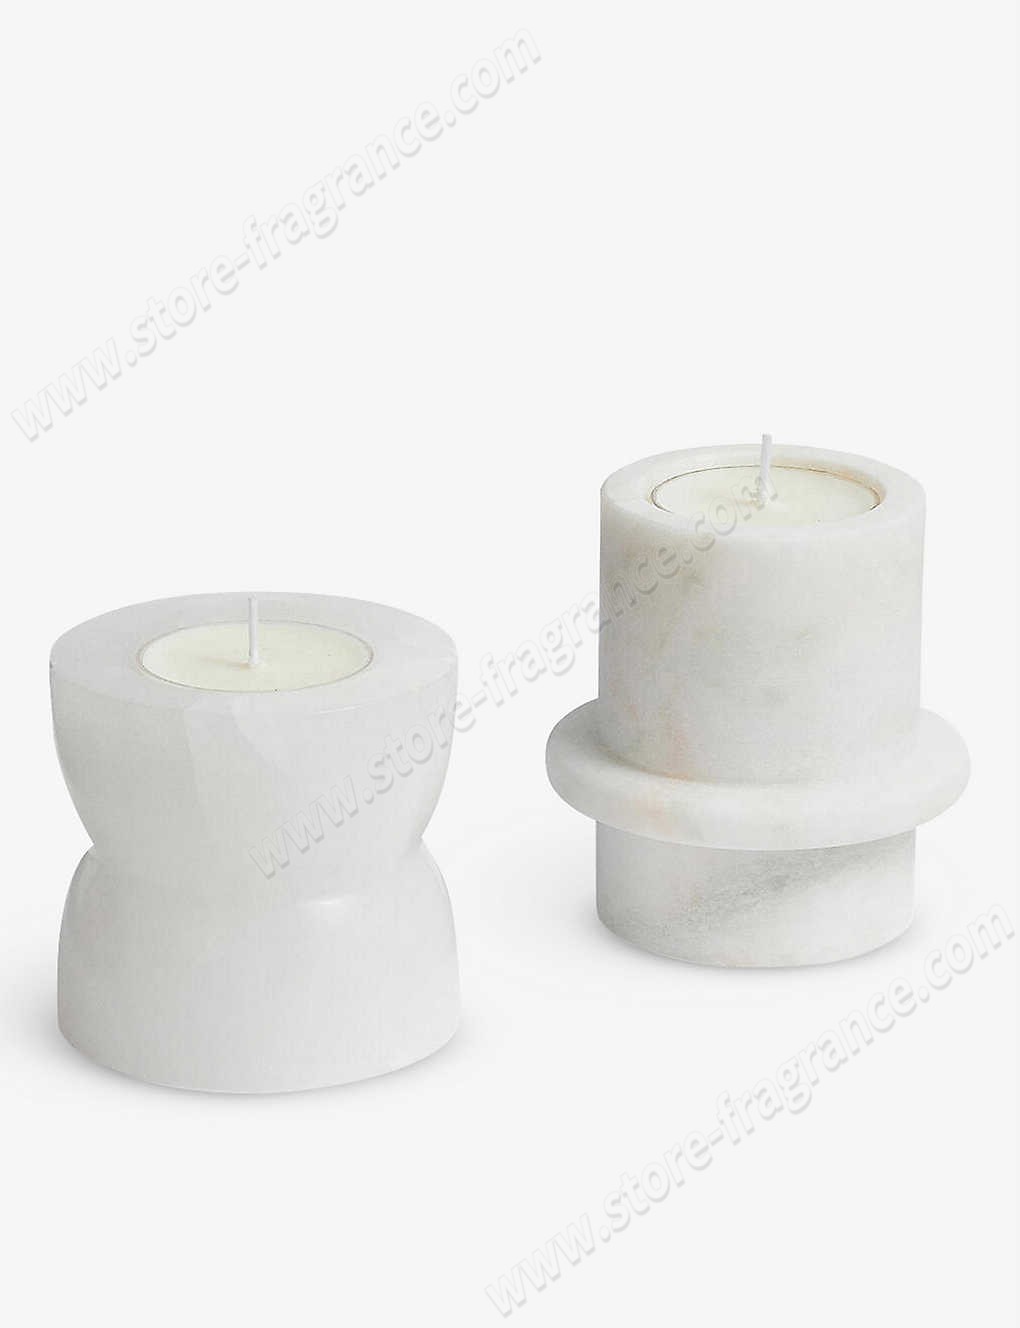 SOHO HOME/Hillerod marble candleholder set Limit Offer - -0